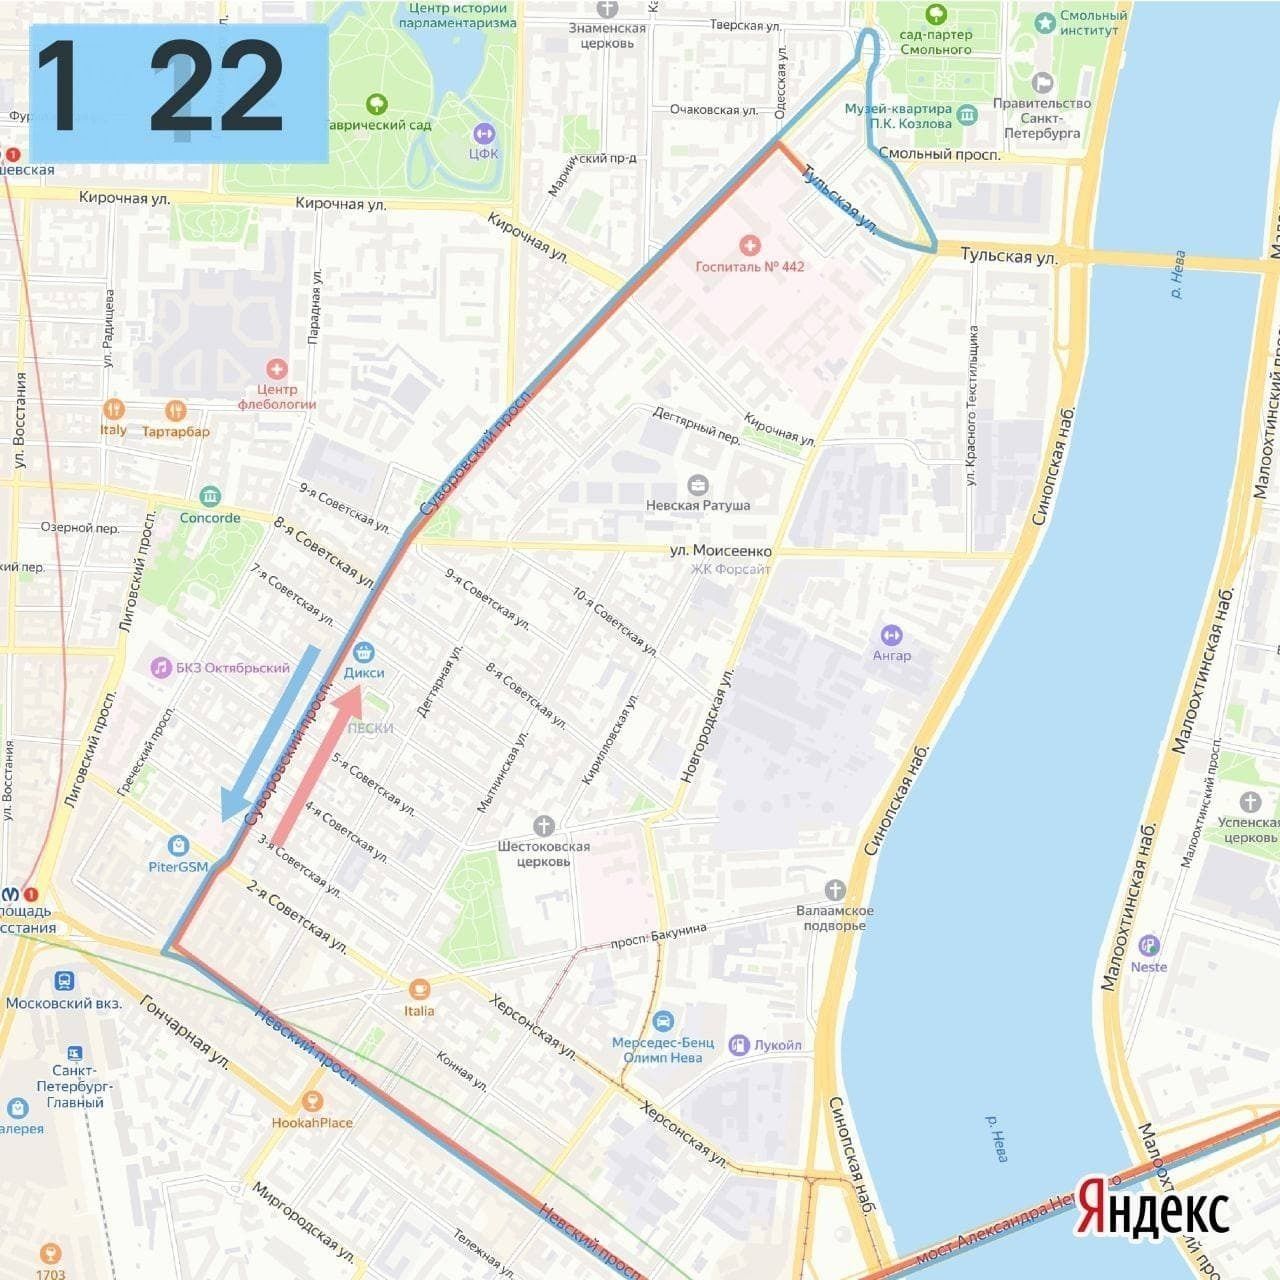 Маршрут 21 троллейбуса спб на карте остановки. Троллейбус 4 СПБ маршрут. Маршрут 23 троллейбуса СПБ. Маршрут троллейбуса 23 Санкт-Петербург на карте. Маршрут троллейбуса 43 Санкт-Петербург на карте.